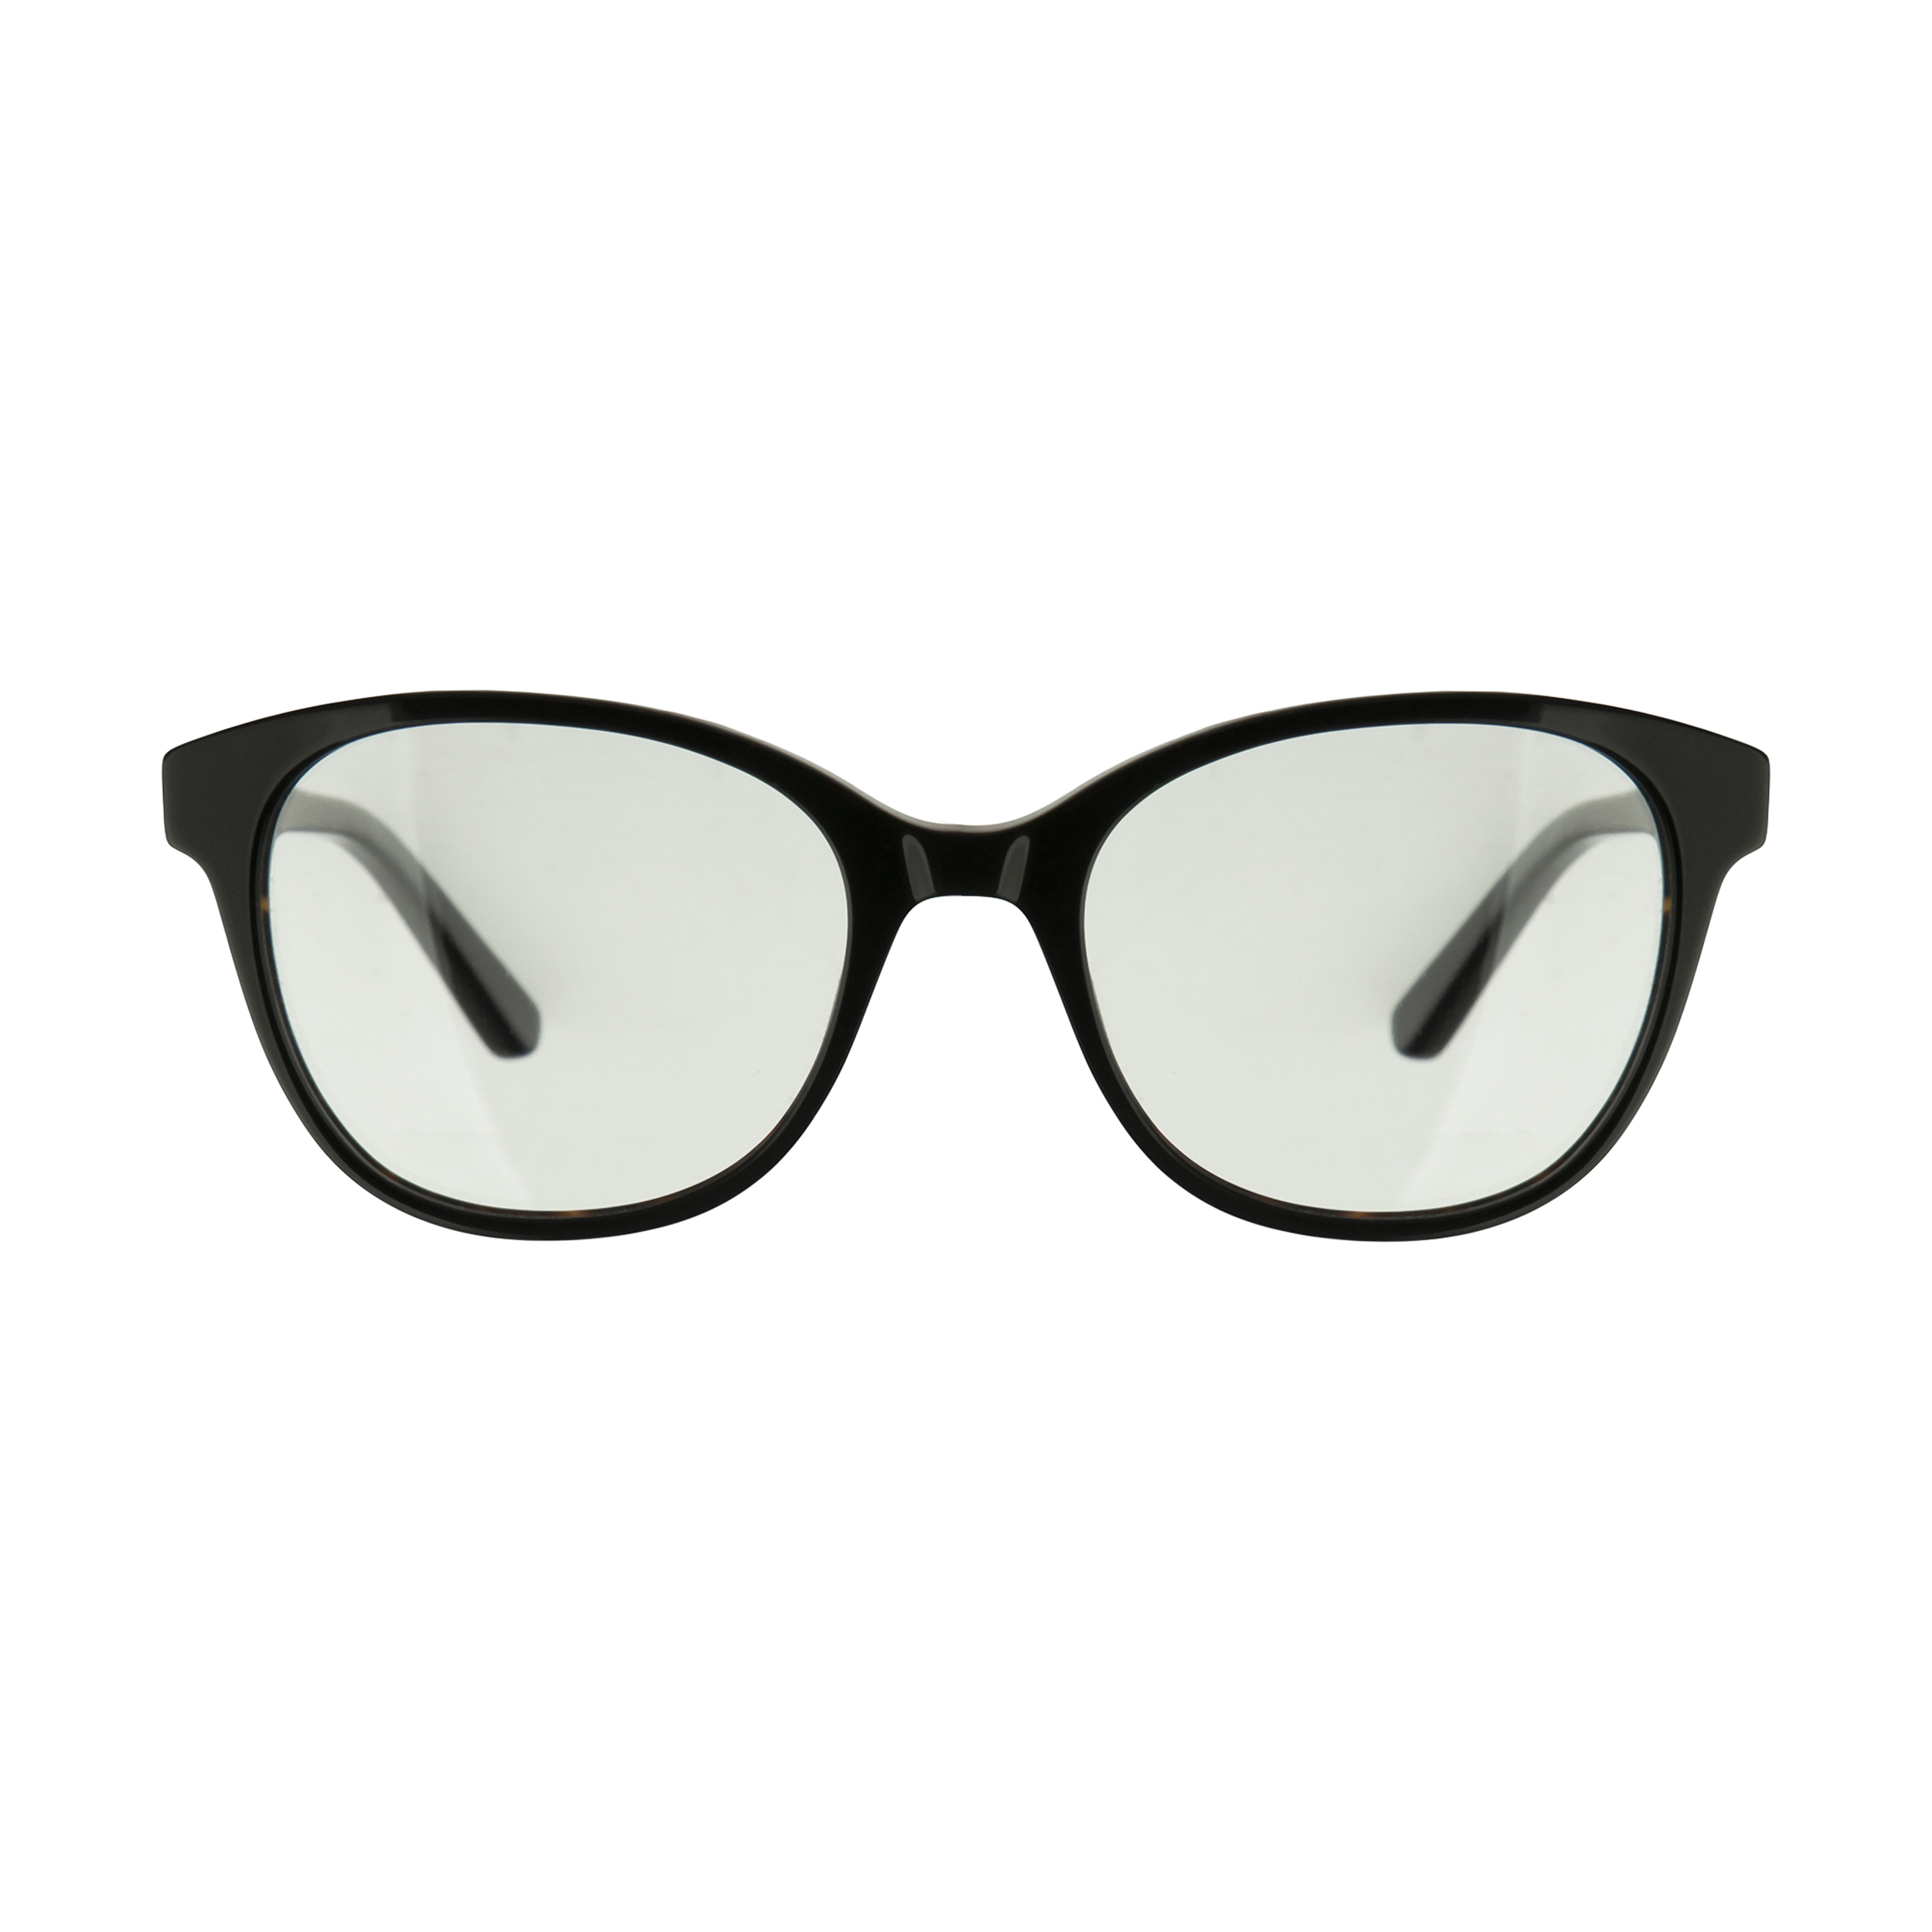 فریم عینک طبی کارل لاگرفلد مدل KL970V123